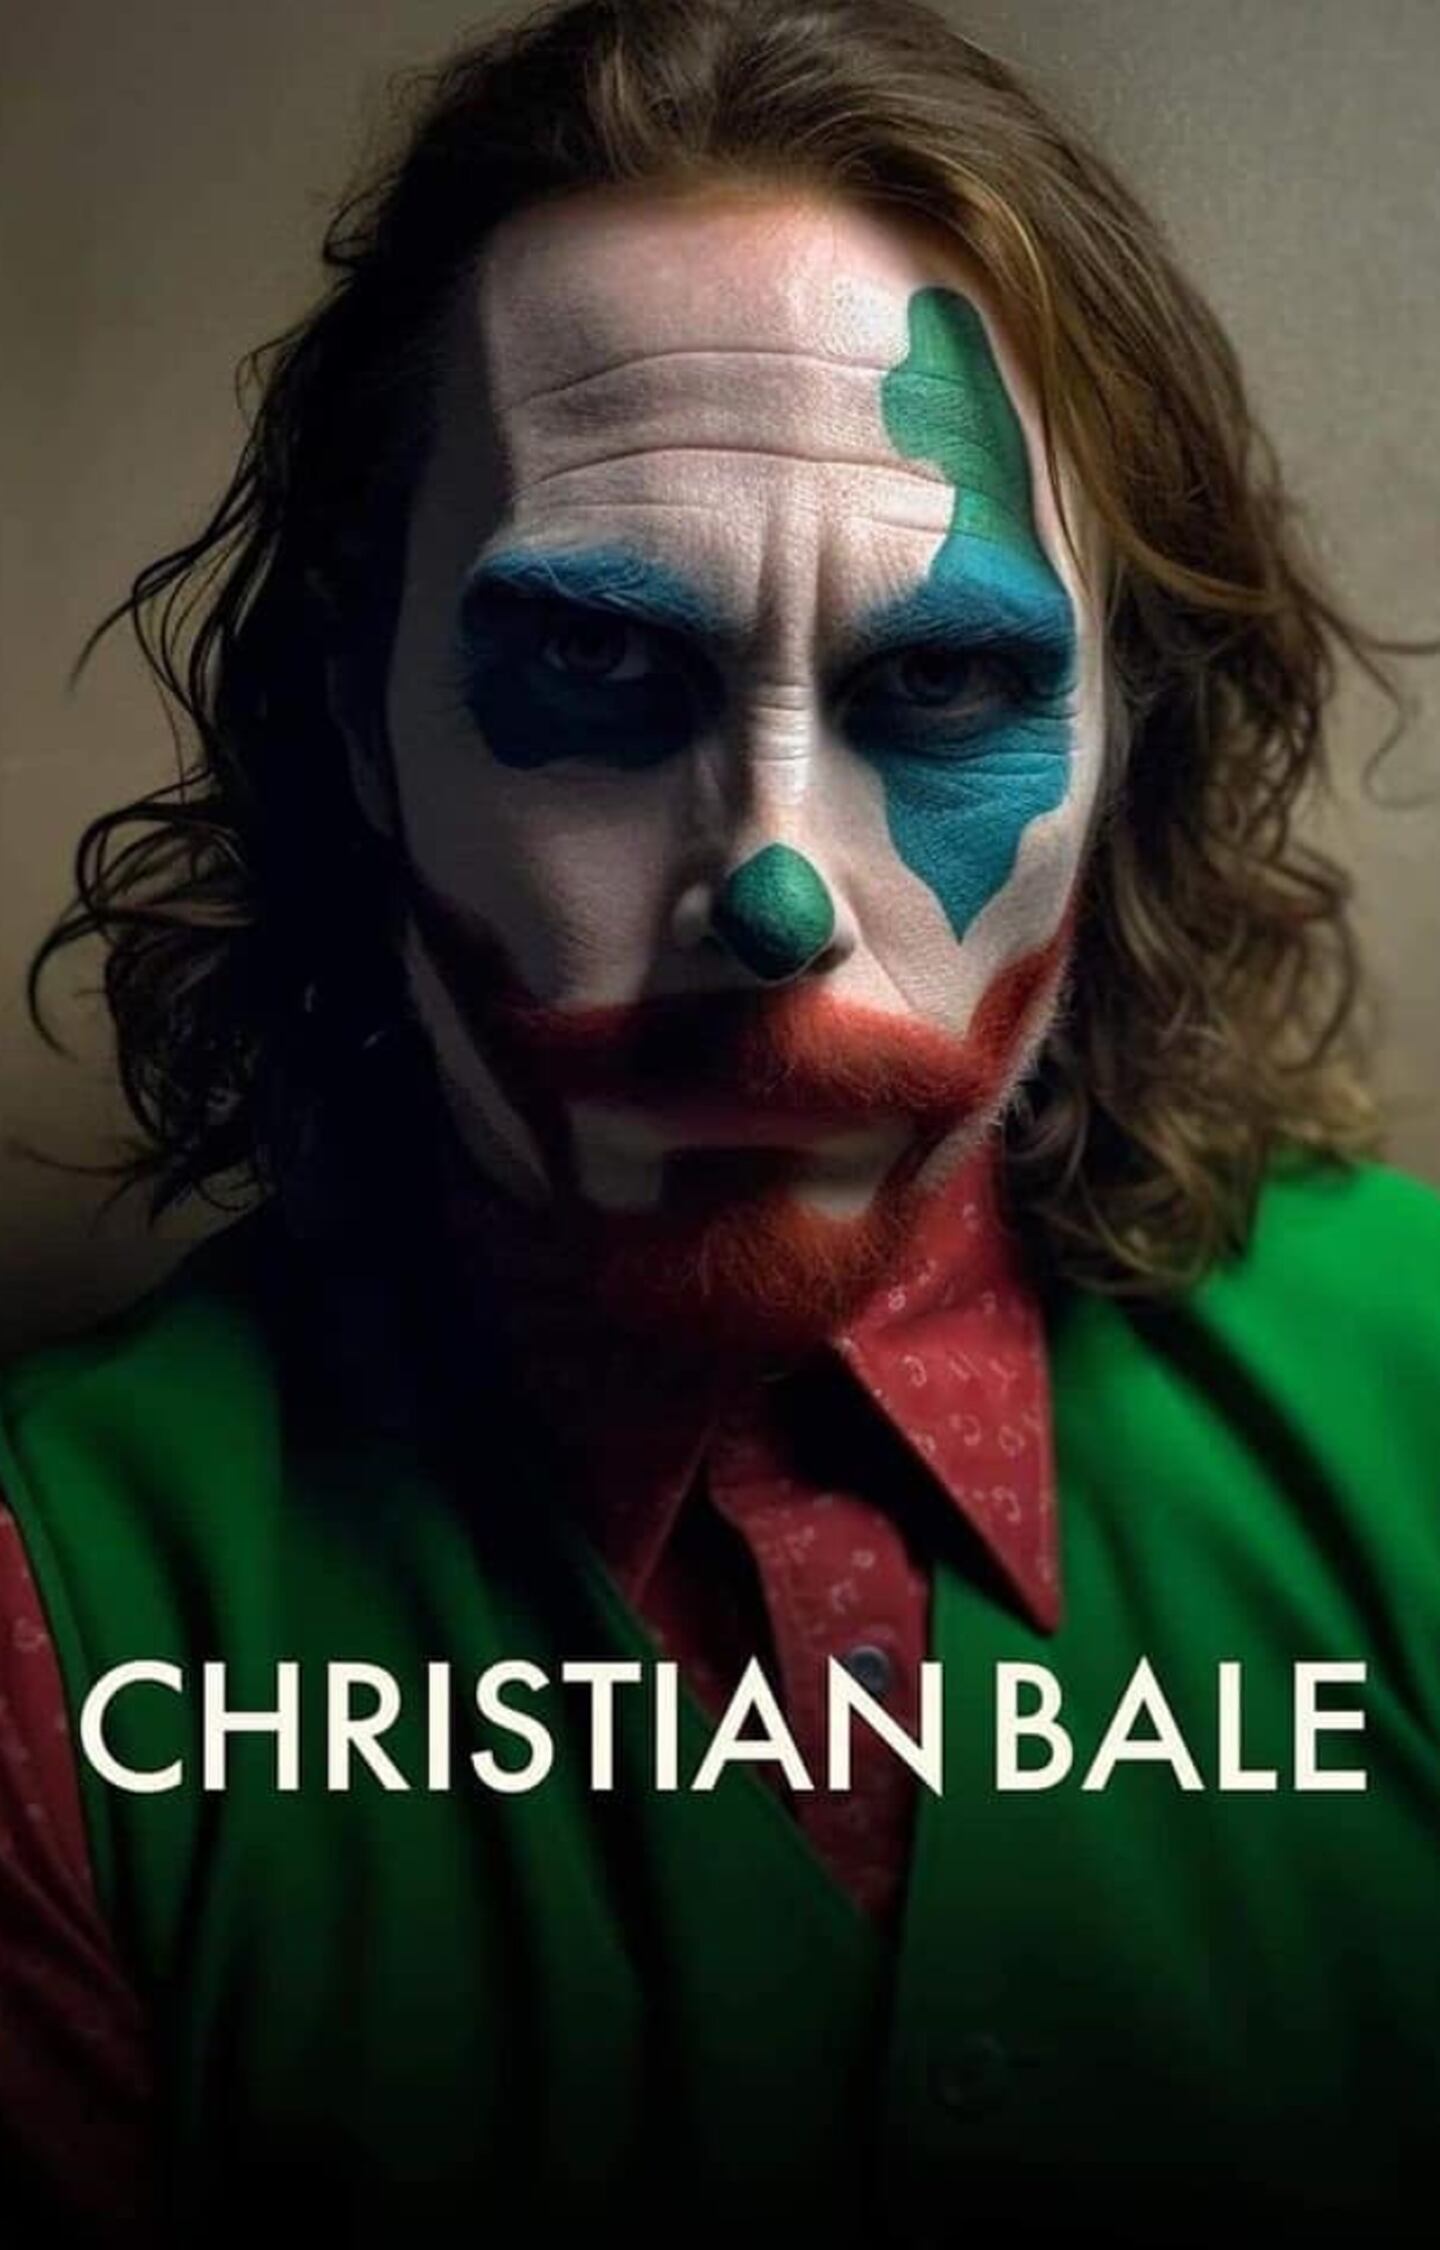 El actor Christian Bale que interpretó a Batman, luciría de esta manera si fuera el Joker según la Inteligencia Artificial